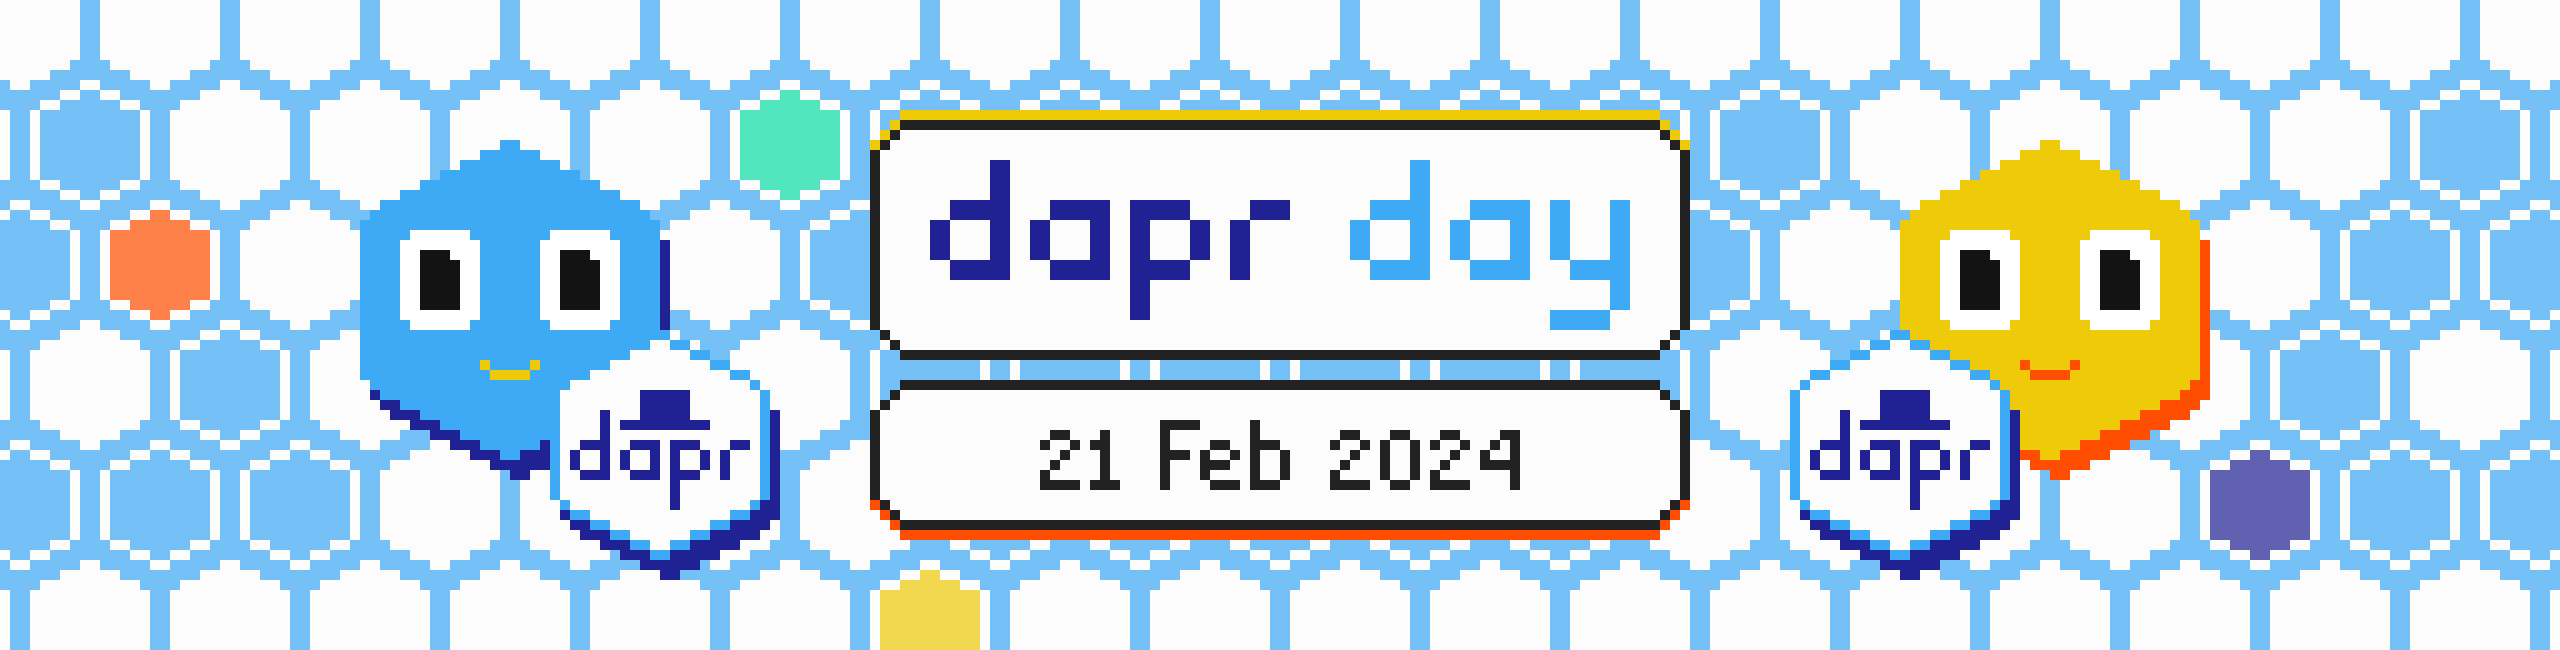 Dapr Day 2024